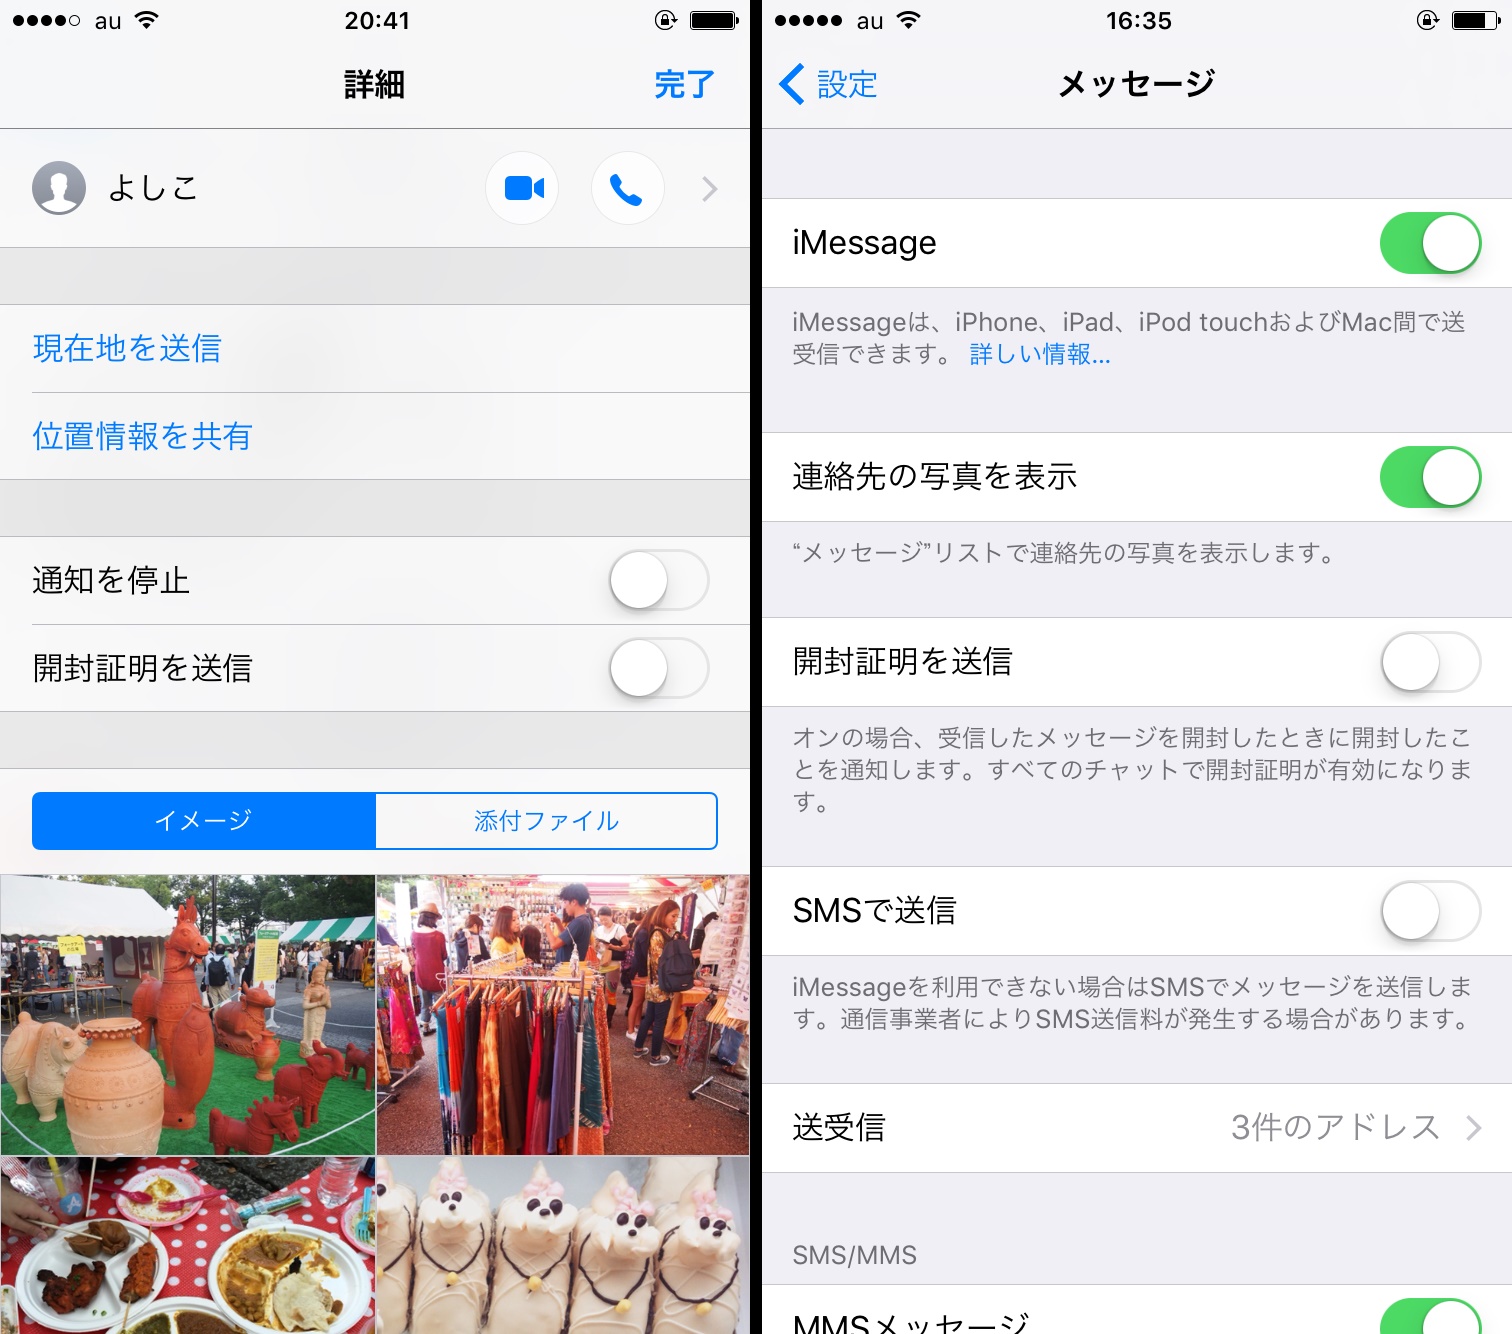 メッセージ の開封は非表示にできる これで返信が遅れても不審に思われない Iphone Tips Engadget 日本版